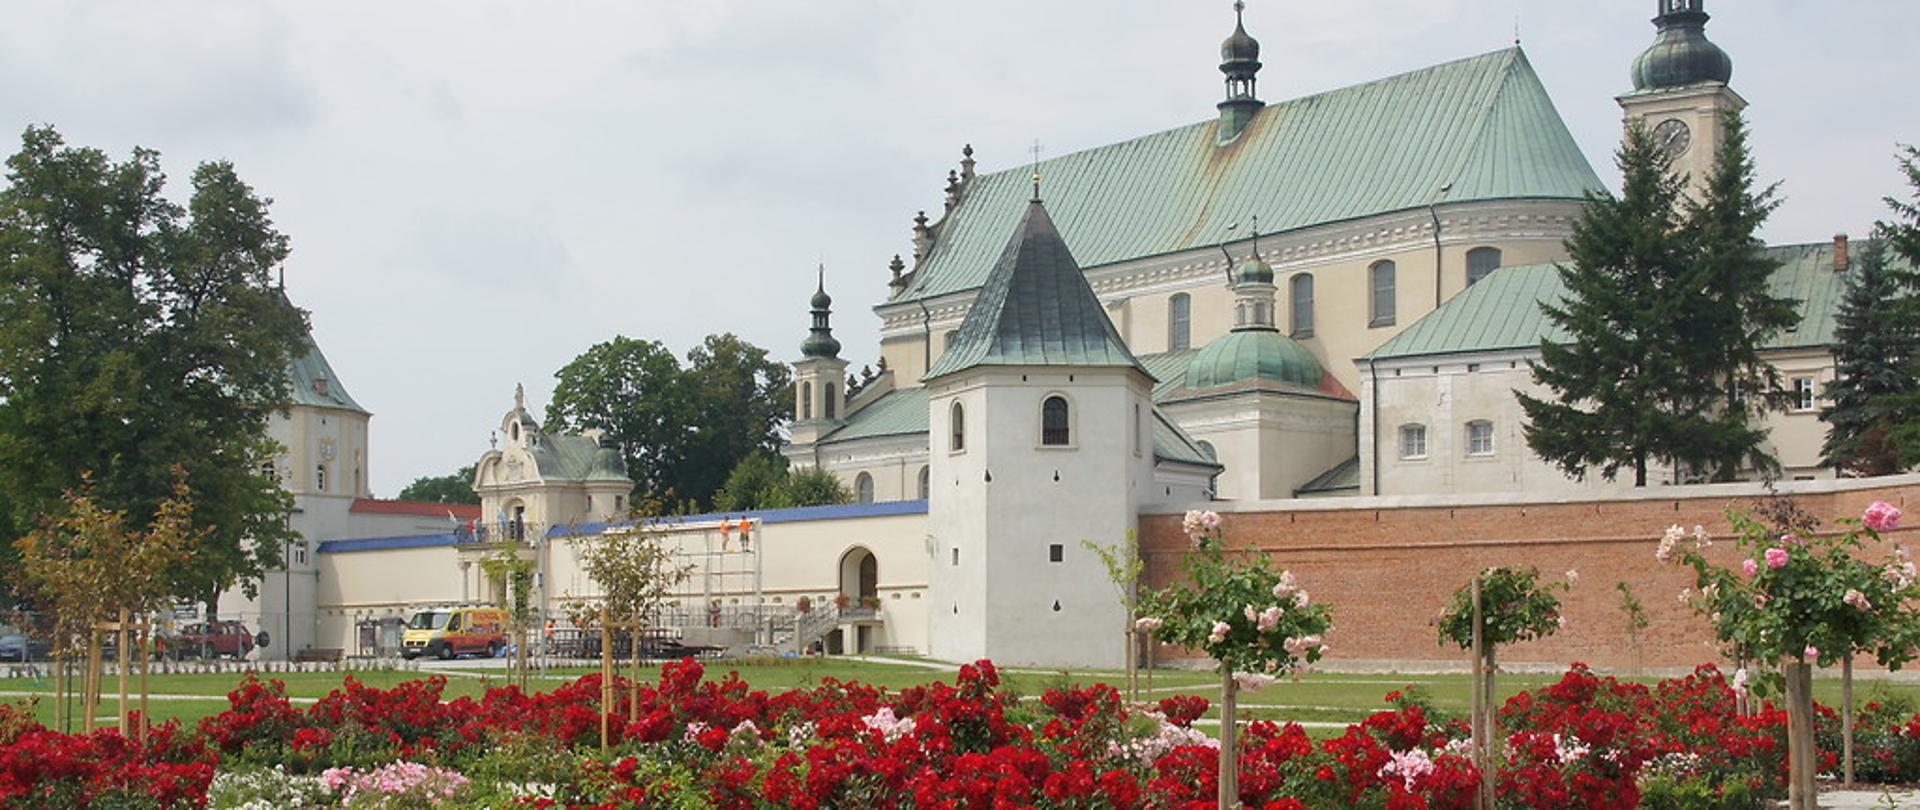 Klasztor otoczony grubym murem, przed klasztorem piękne rabaty kwiatów, głowienie czerwonych